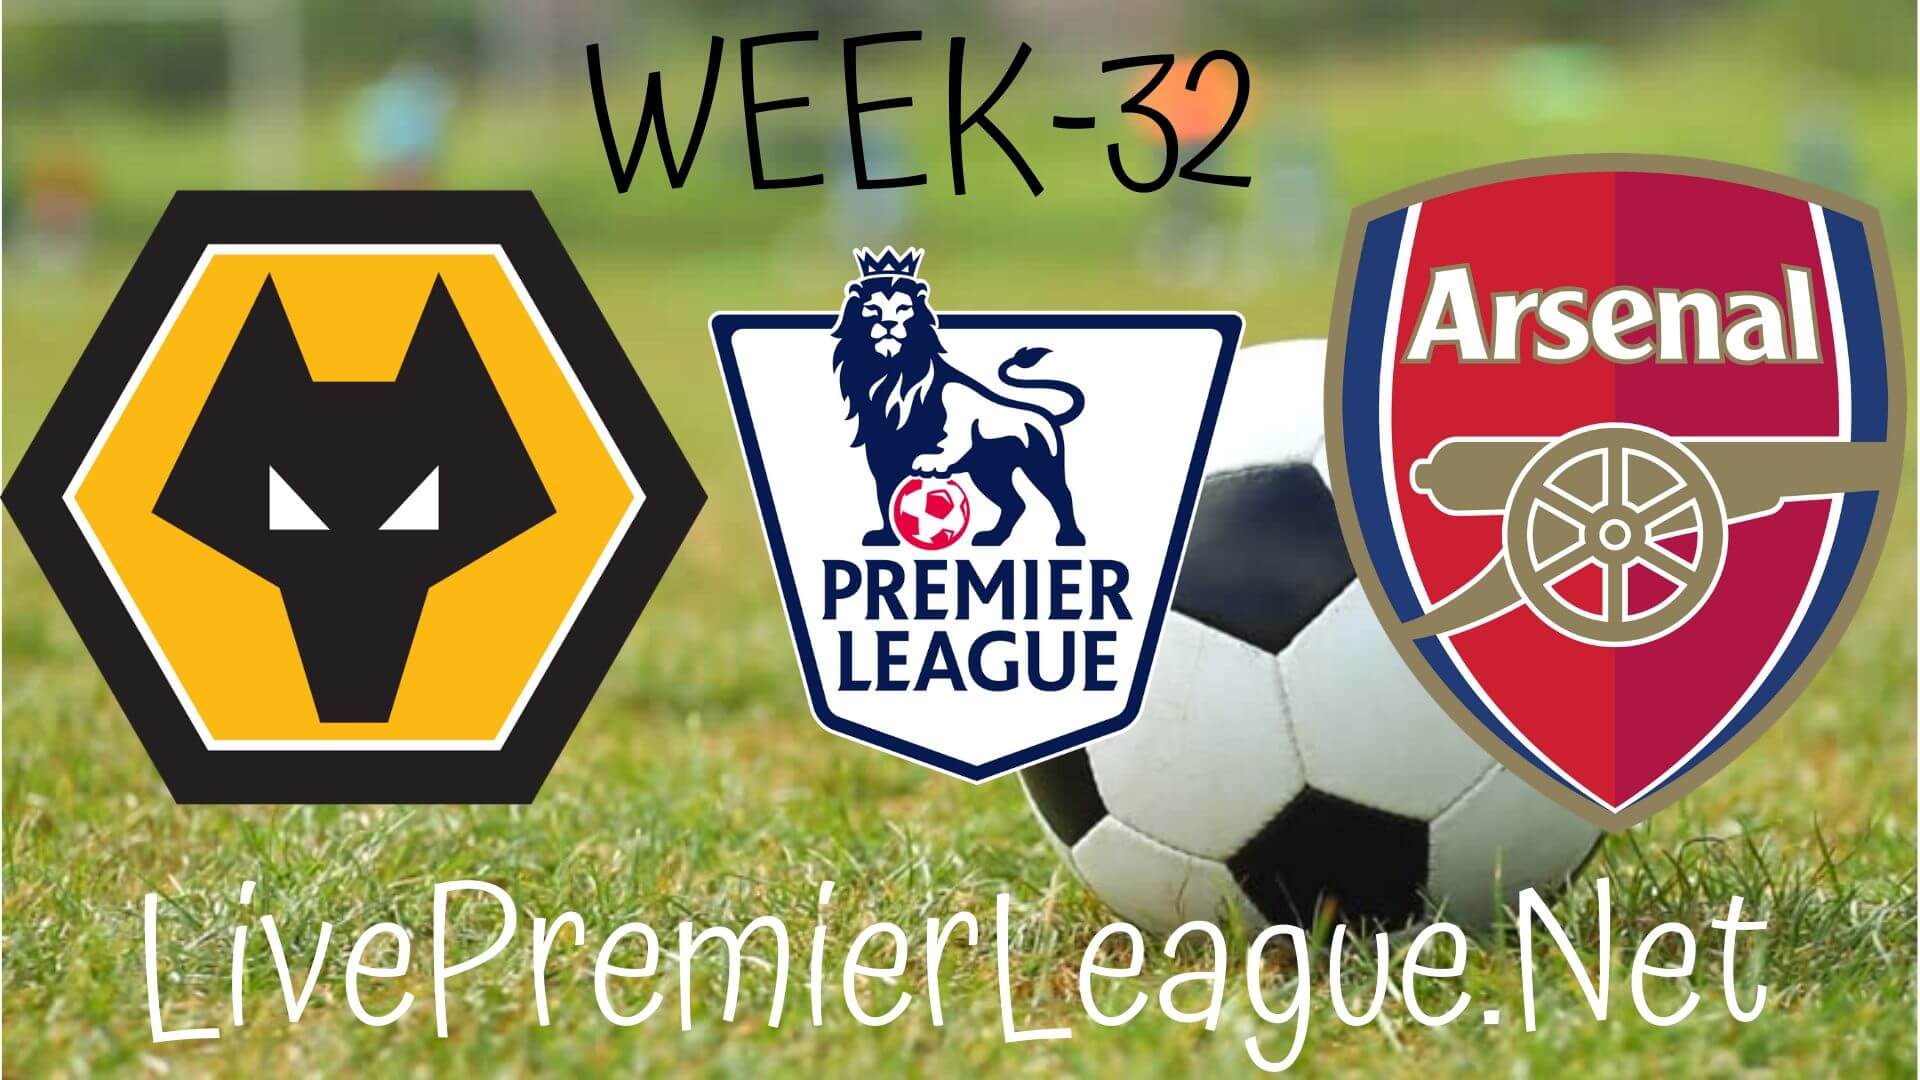 Wolverhampton Wanderers Vs Arsenal Live Stream | EPL Week 33